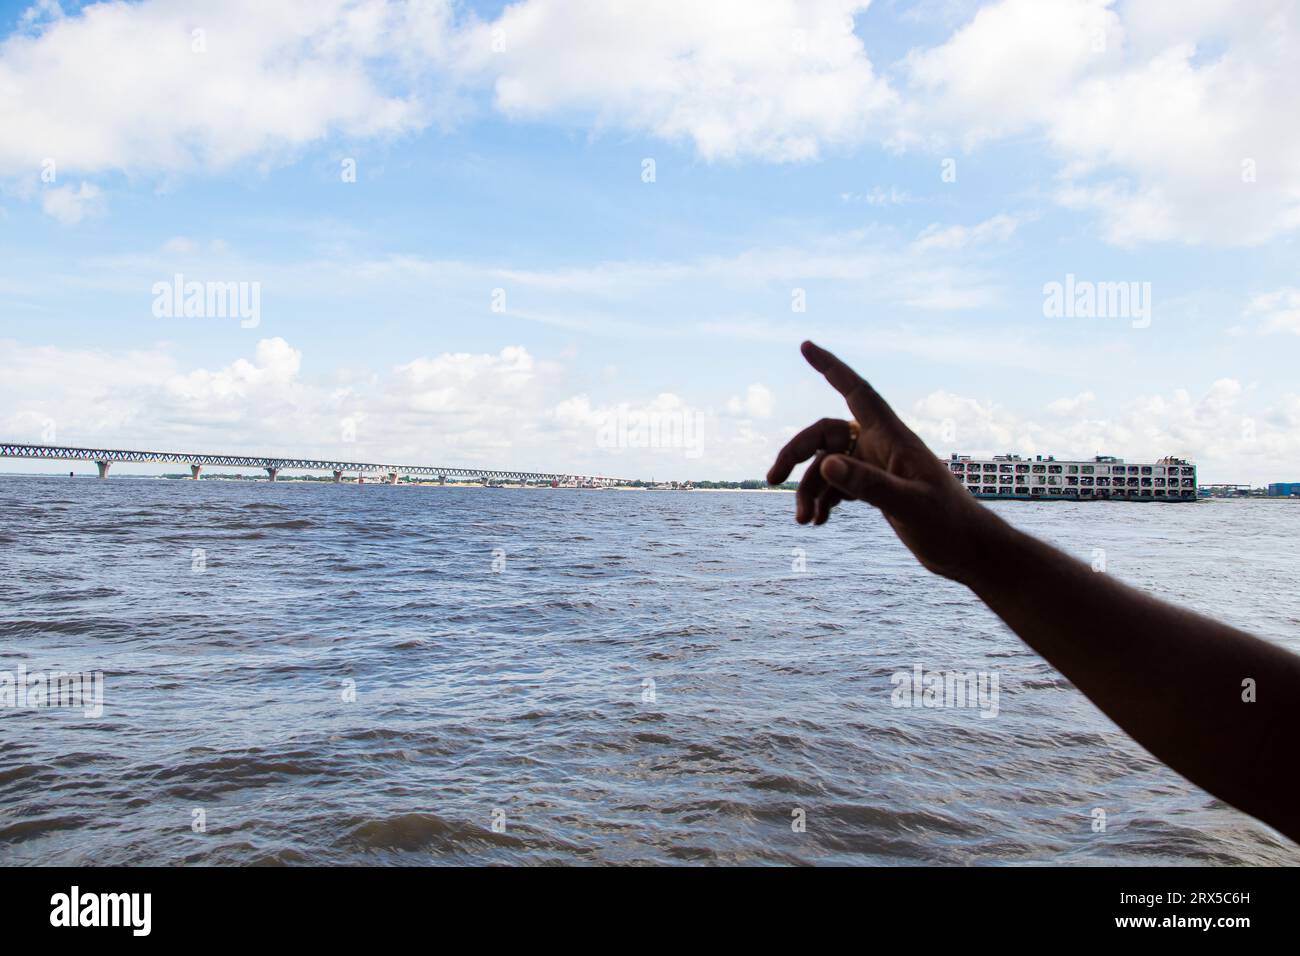 Padma Bridge exclusive image 4k sous le beau ciel nuageux de Padma River, Bangladesh Banque D'Images